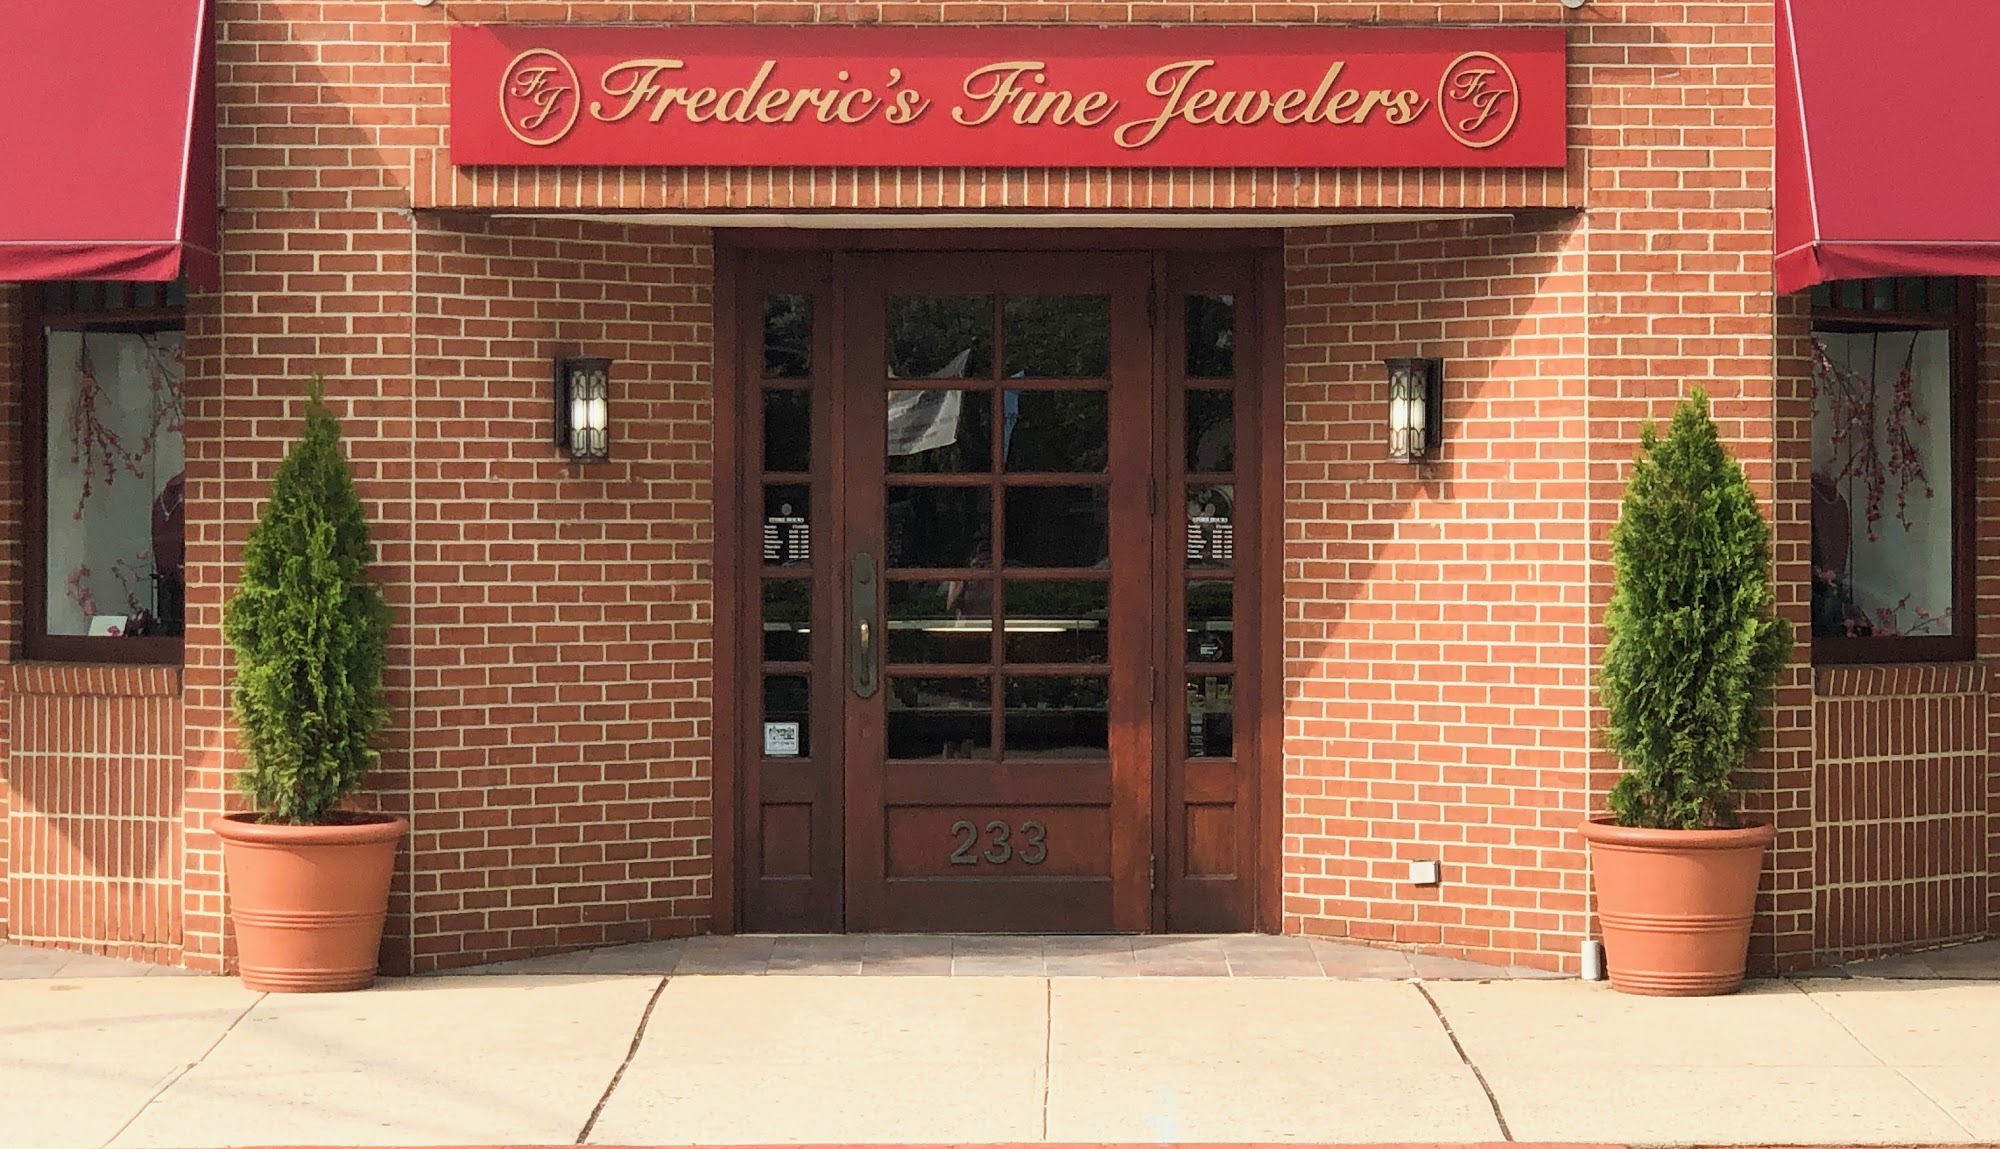 Frederic's Fine Jewelers